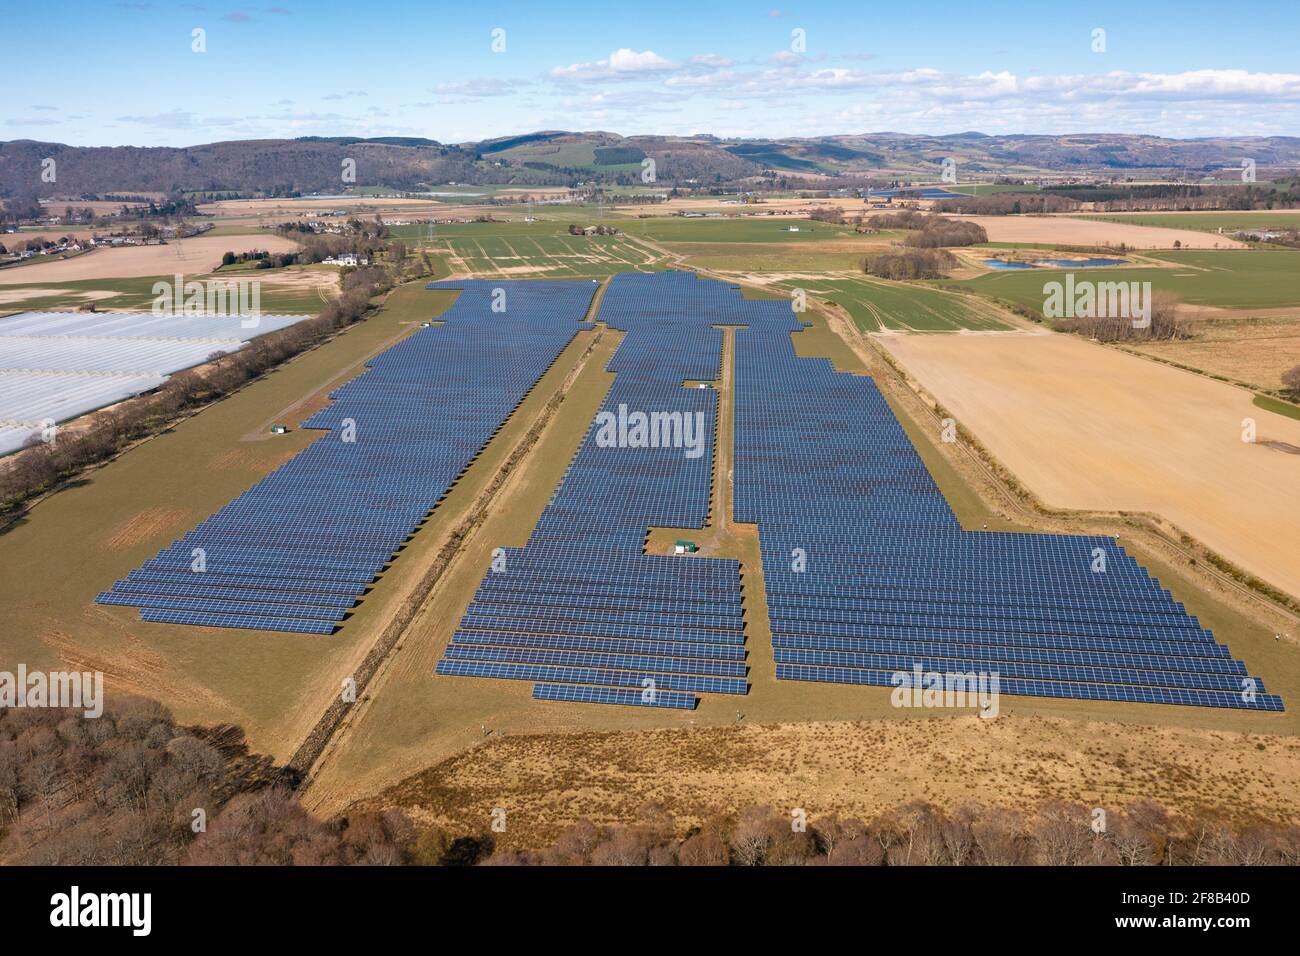 Vue aérienne depuis un drone de panneaux solaires dans une ferme d'énergie solaire en Écosse, au Royaume-Uni Banque D'Images